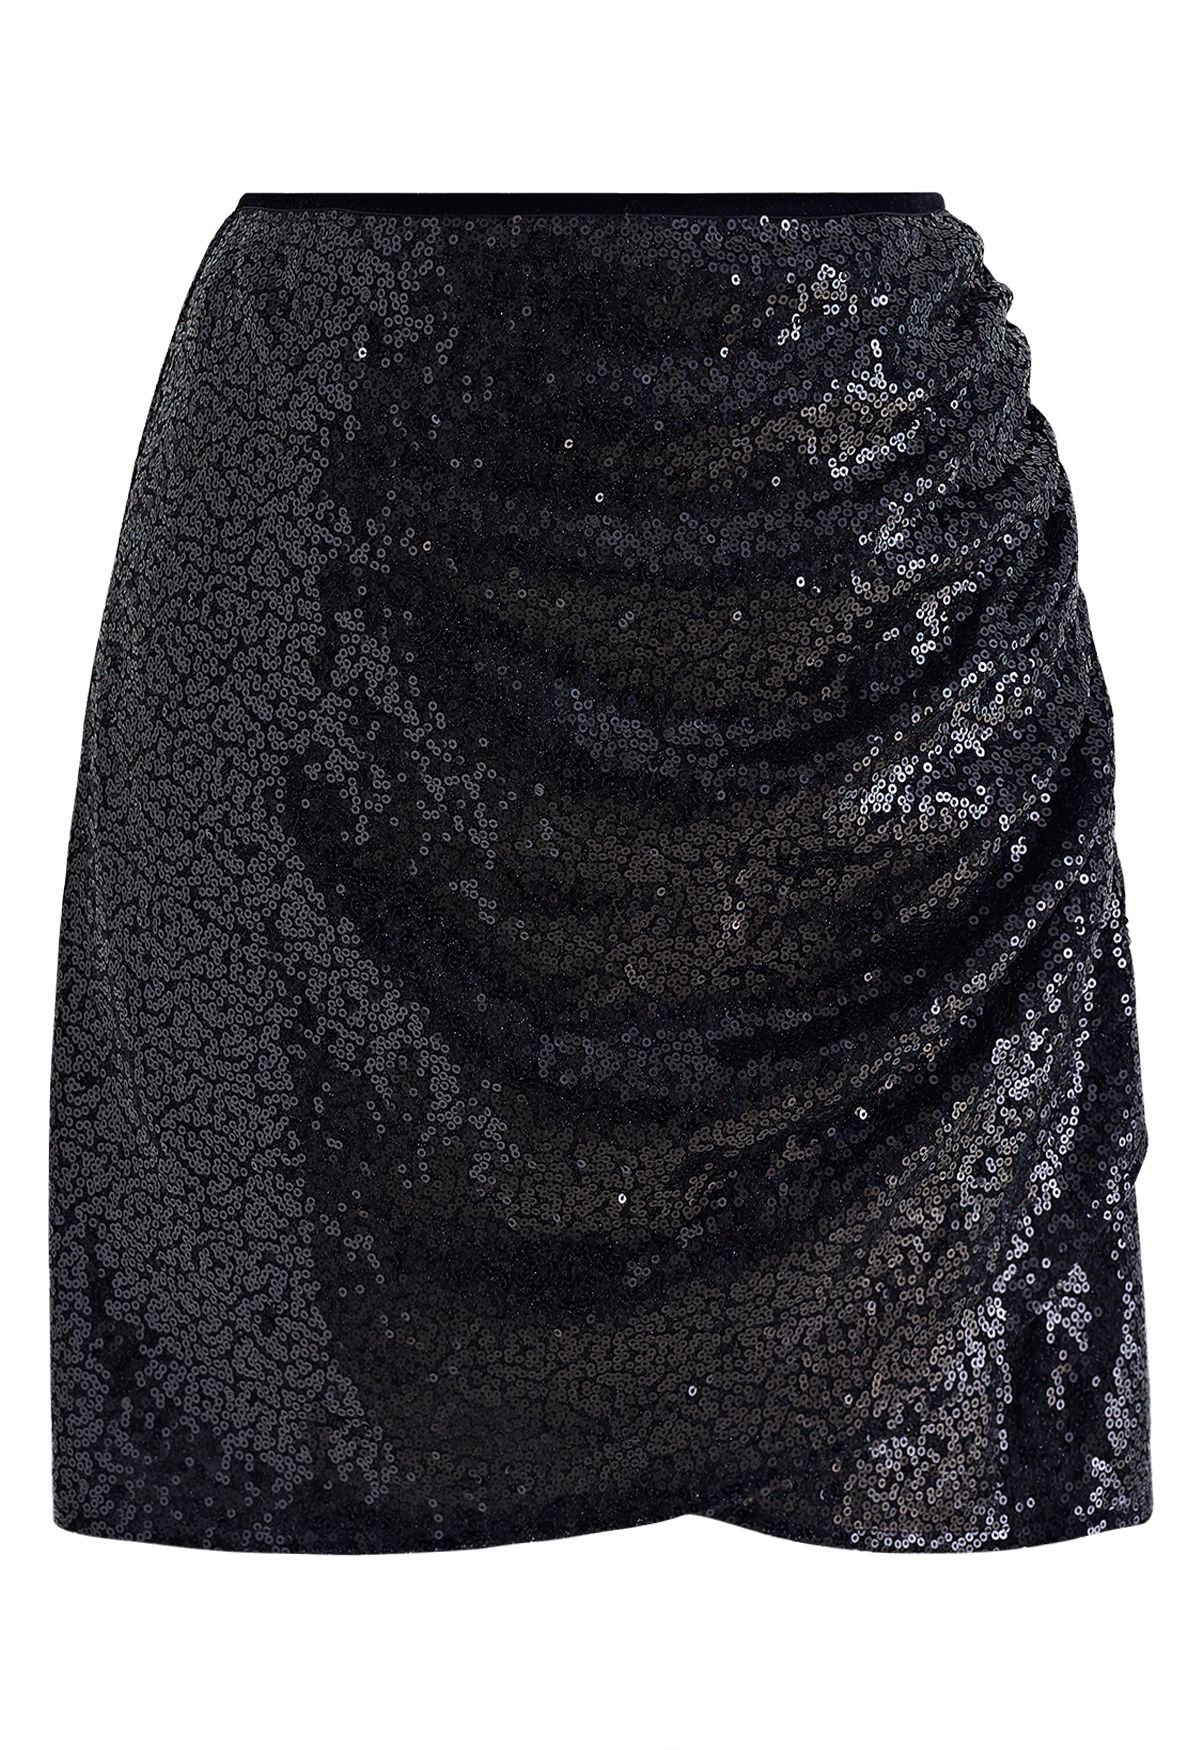 Minifalda fruncida lateral con lentejuelas brillantes en negro